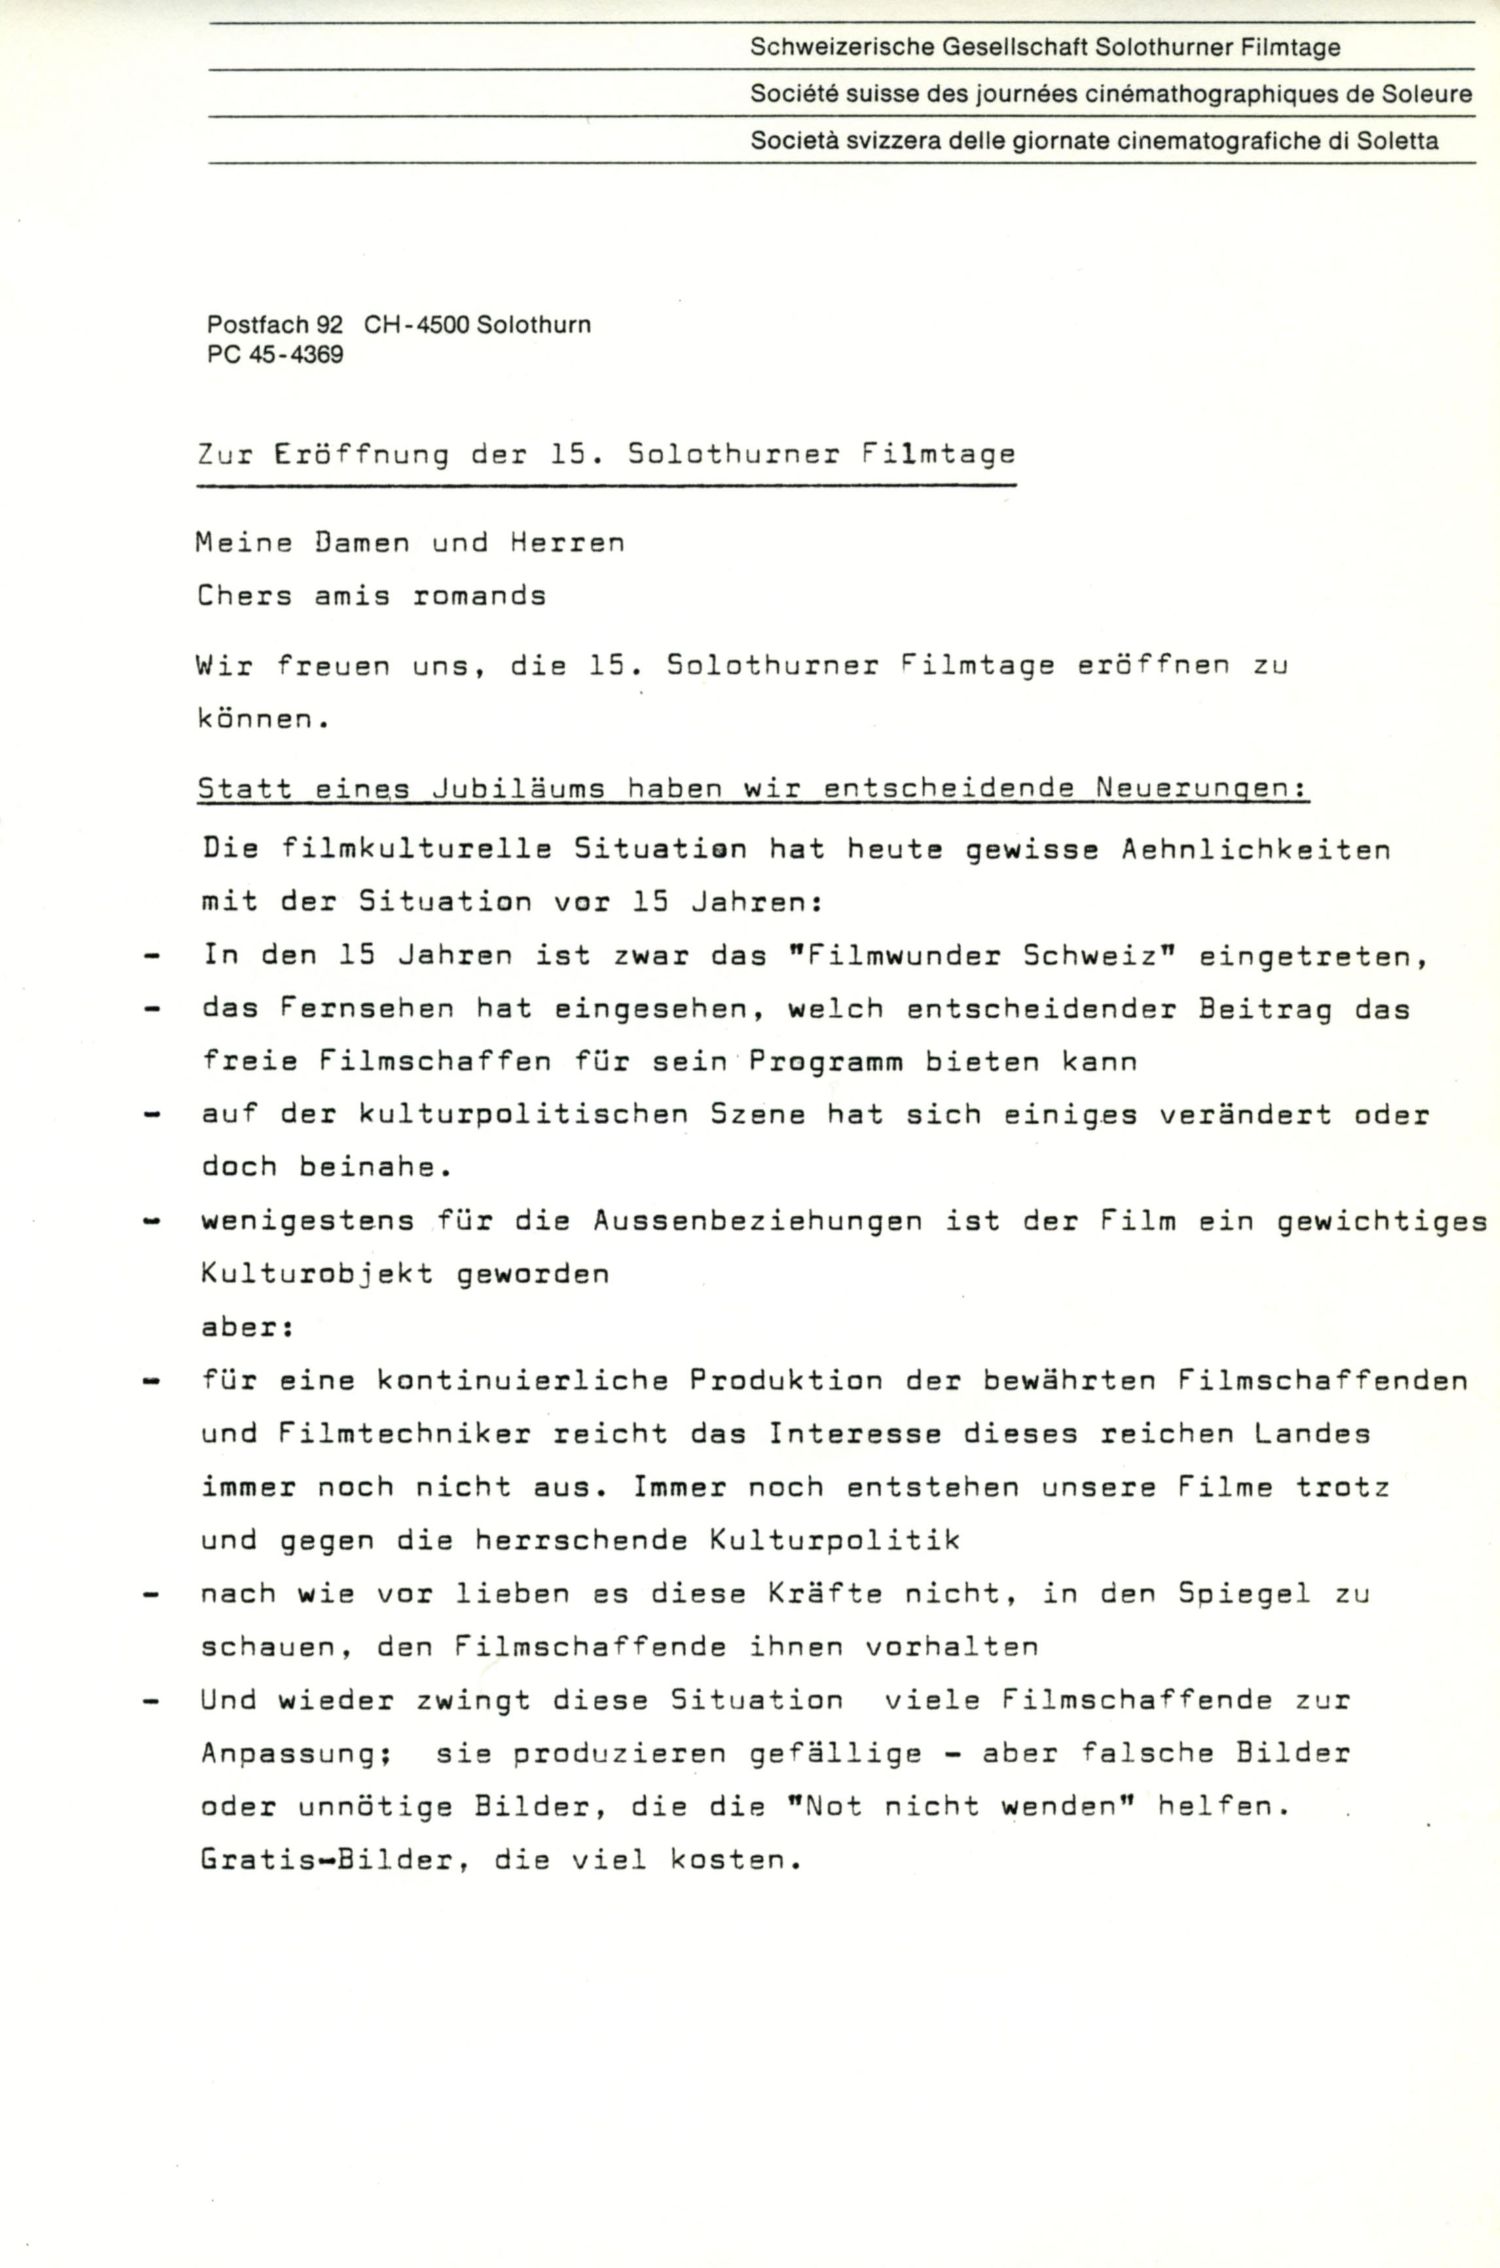 Zur Eröffnung der Solothurner Filmtage, 1980, S.1